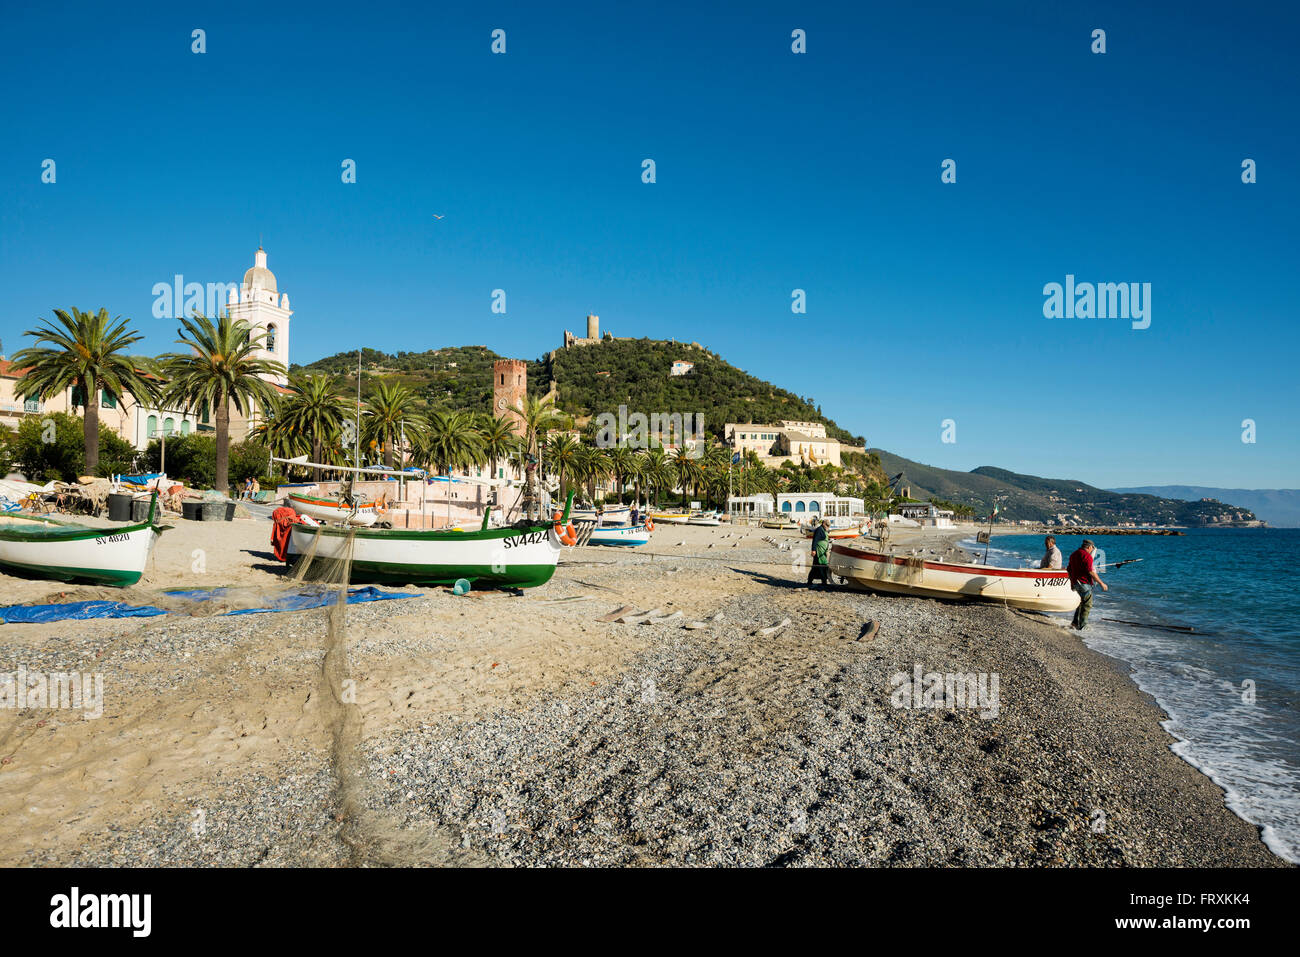 Fishing boats at beach, Noli, Province of Savona, Liguria, Italy Stock Photo